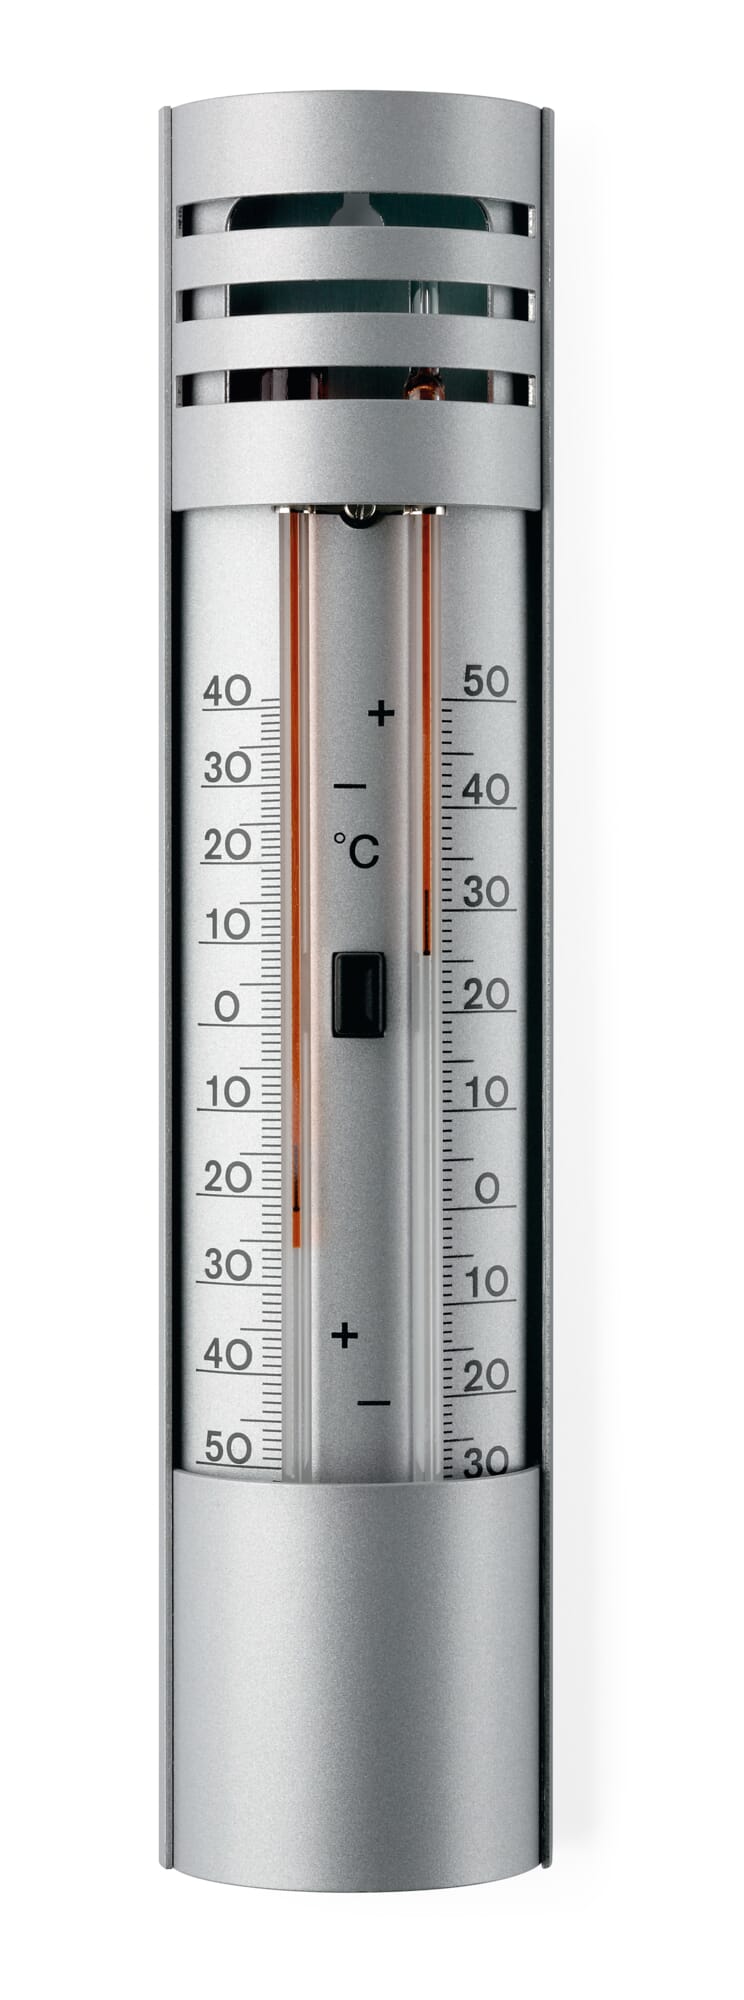 https://assets.manufactum.de/p/084/084253/84253_01.jpg/minimum-maximum-thermometer-aluminum.jpg